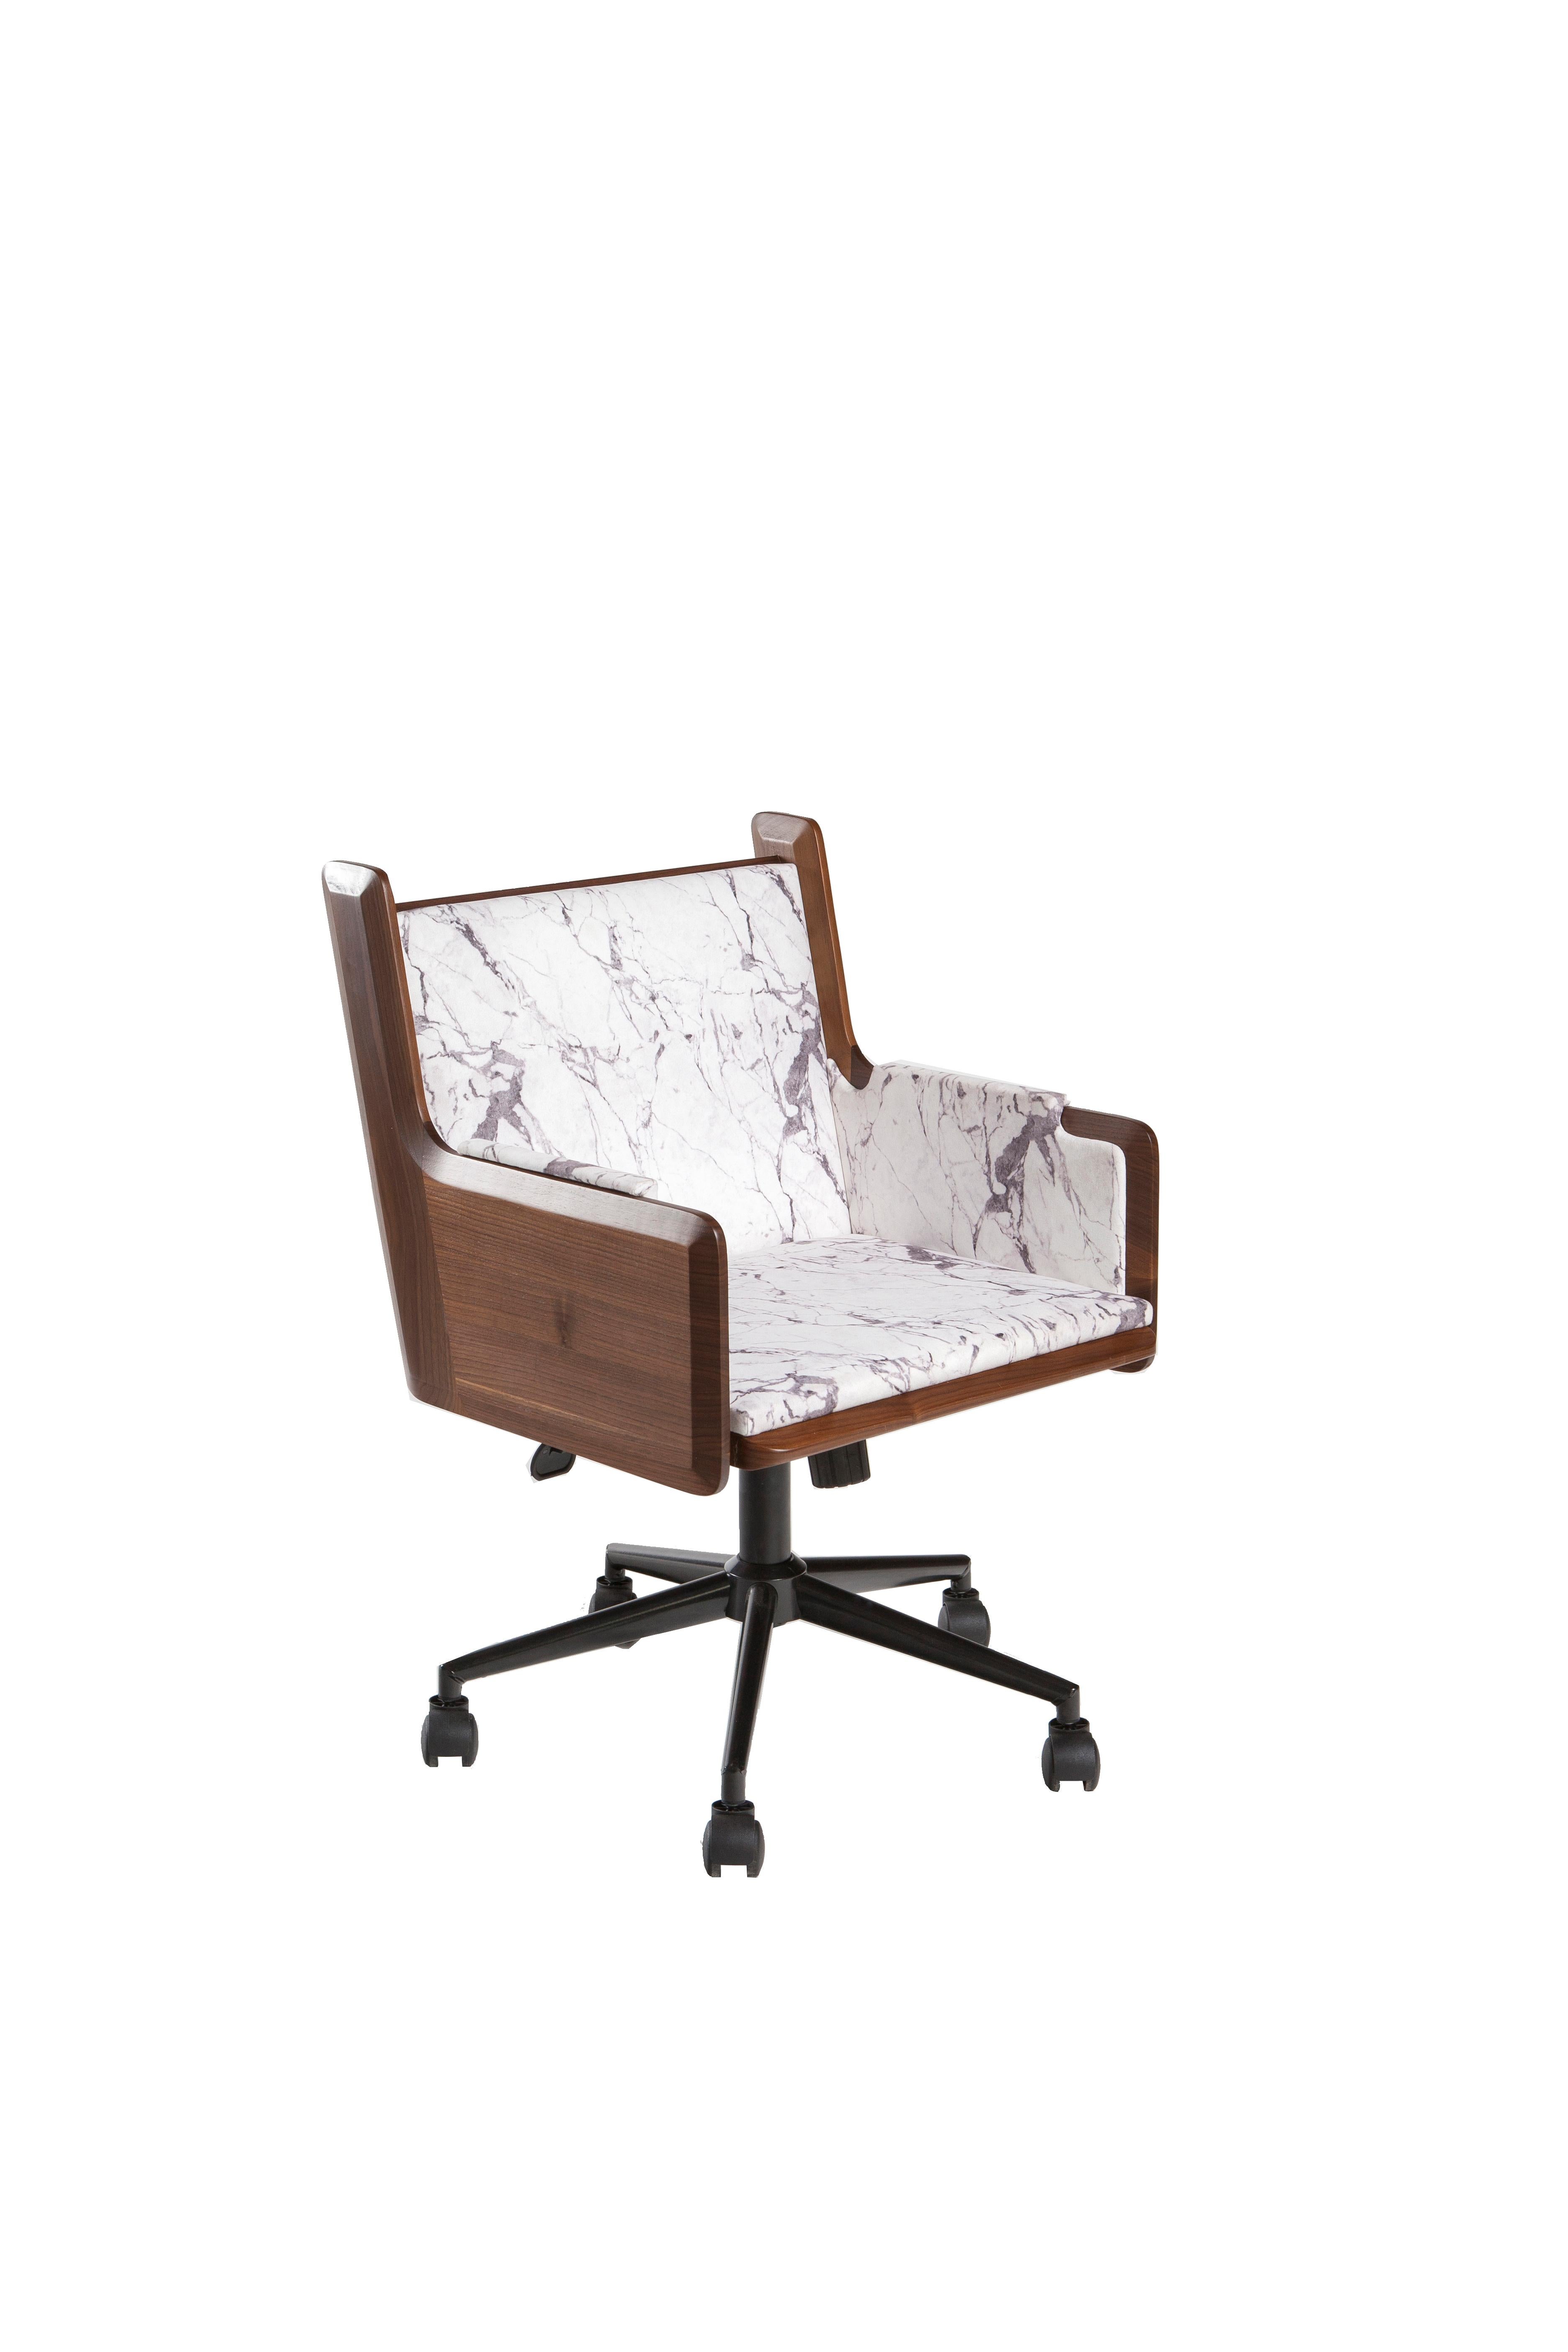 Interprétation par KONTRA de la chaise longue avec un corps en noyer ou en chêne massif et un revêtement en cuir.
